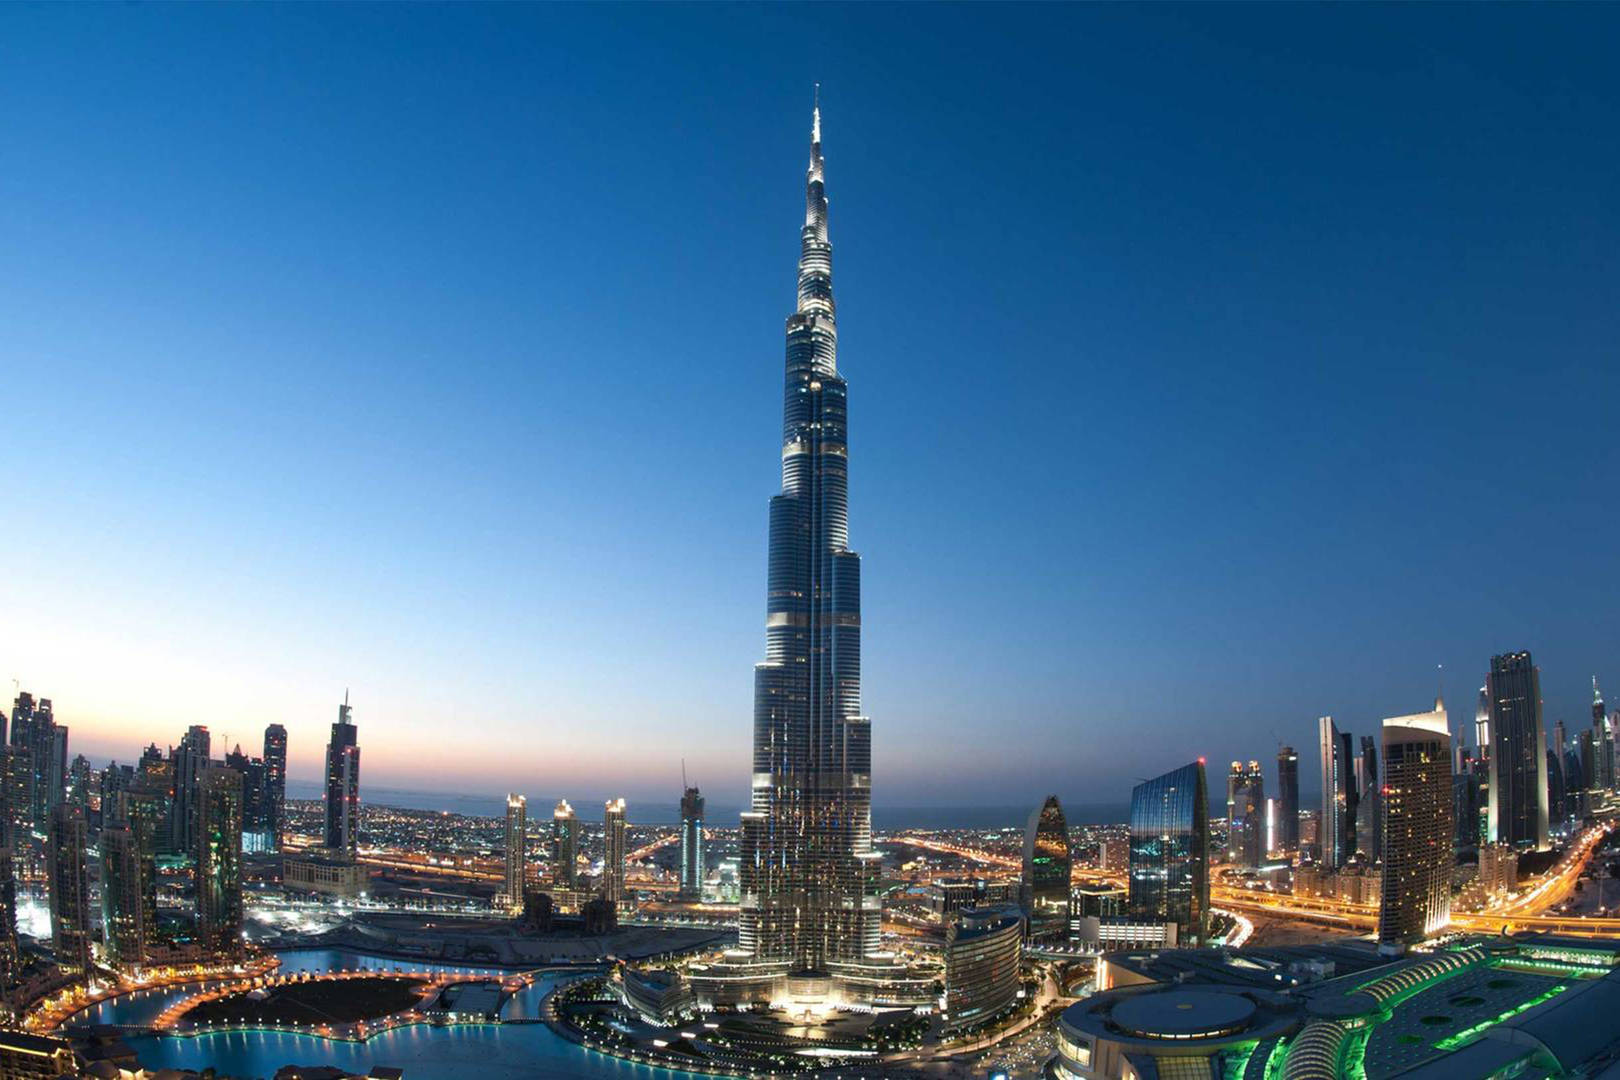 Jumeirah Aerial shot of the Burj Khalifa